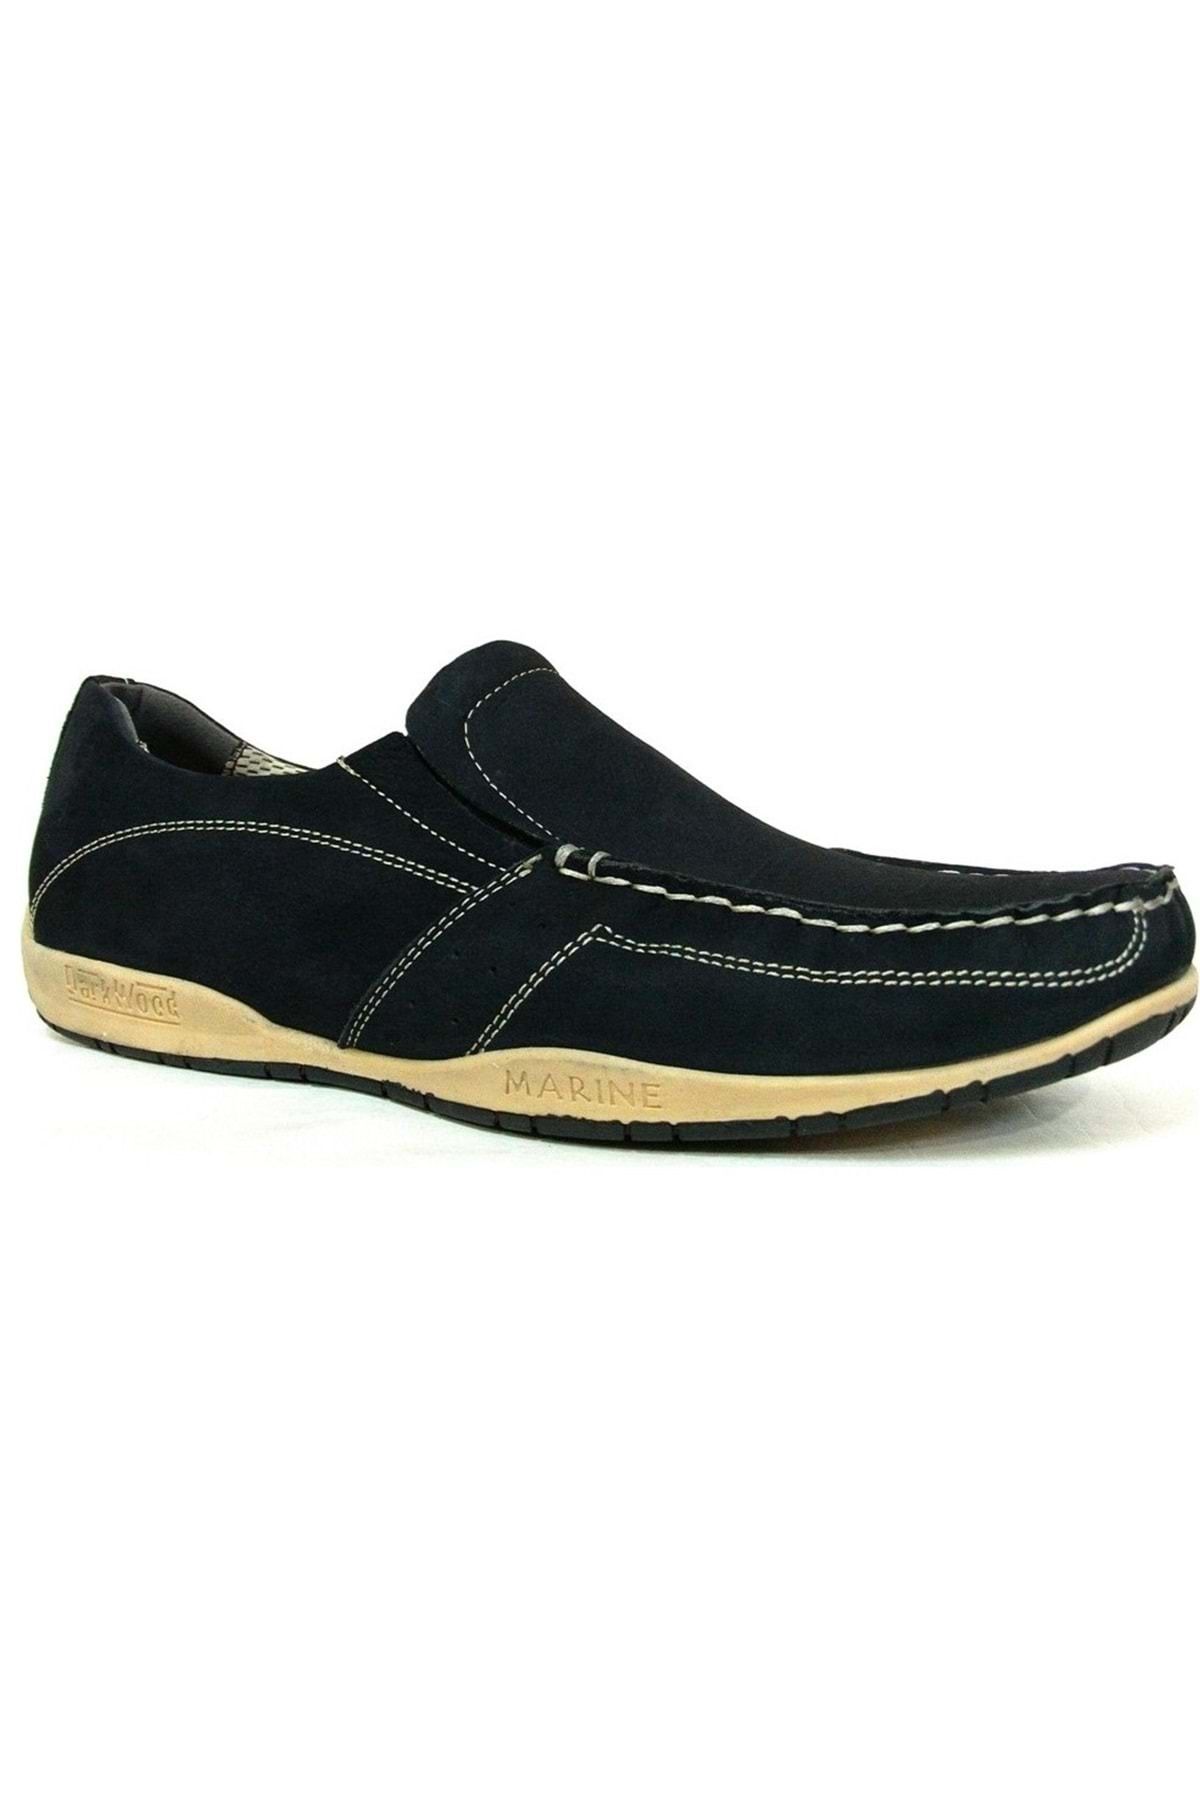 Darkwood Marine %100 Hakiki Deri Lastikli 51101 Erkek Ayakkabı Siyah